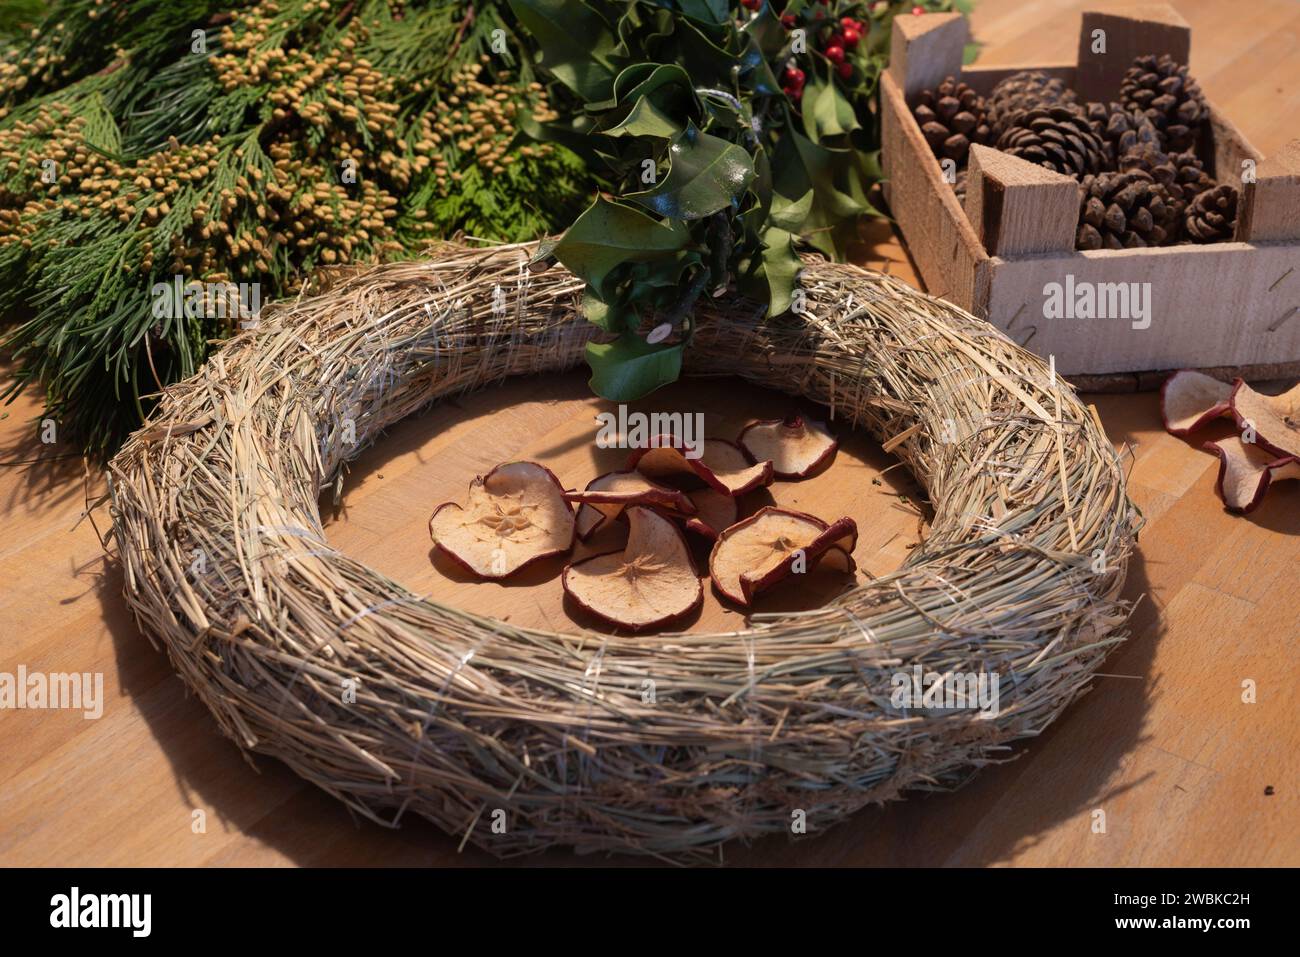 Una corona bianca, mele di pino e vegetazione di abete giacciono su un tavolo. Gli utensili vengono utilizzati per creare una corona dell'Avvento autolegata. Foto Stock